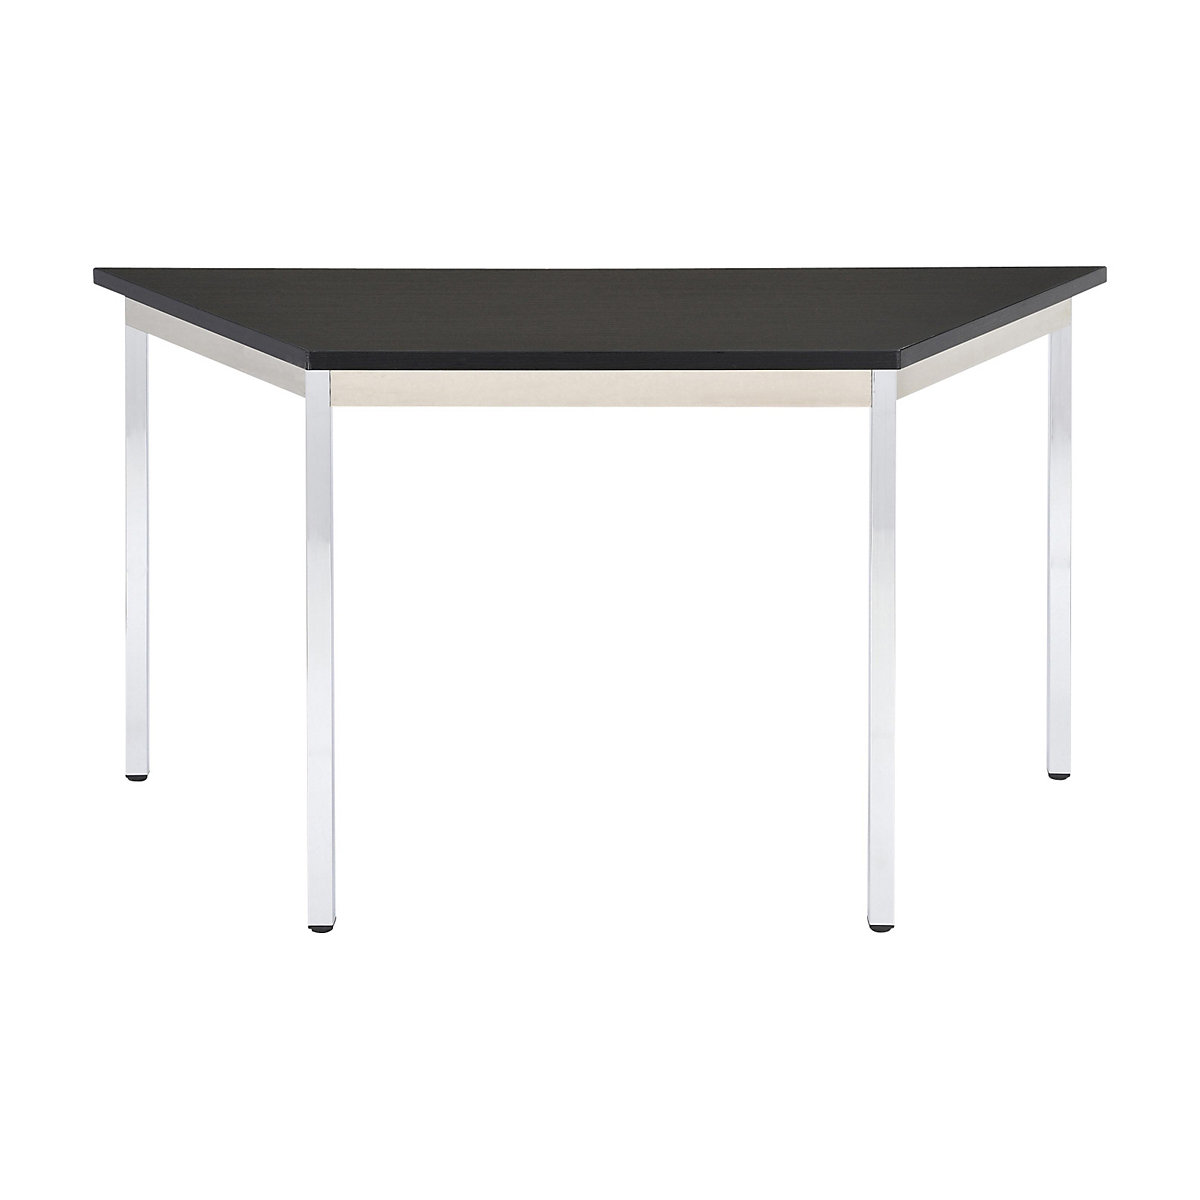 Víceúčelový stůl – eurokraft basic, lichoběžníkový tvar, v x š x h 740 x 1200 x 600 mm, deska černá, podstavec pochromovaný-17